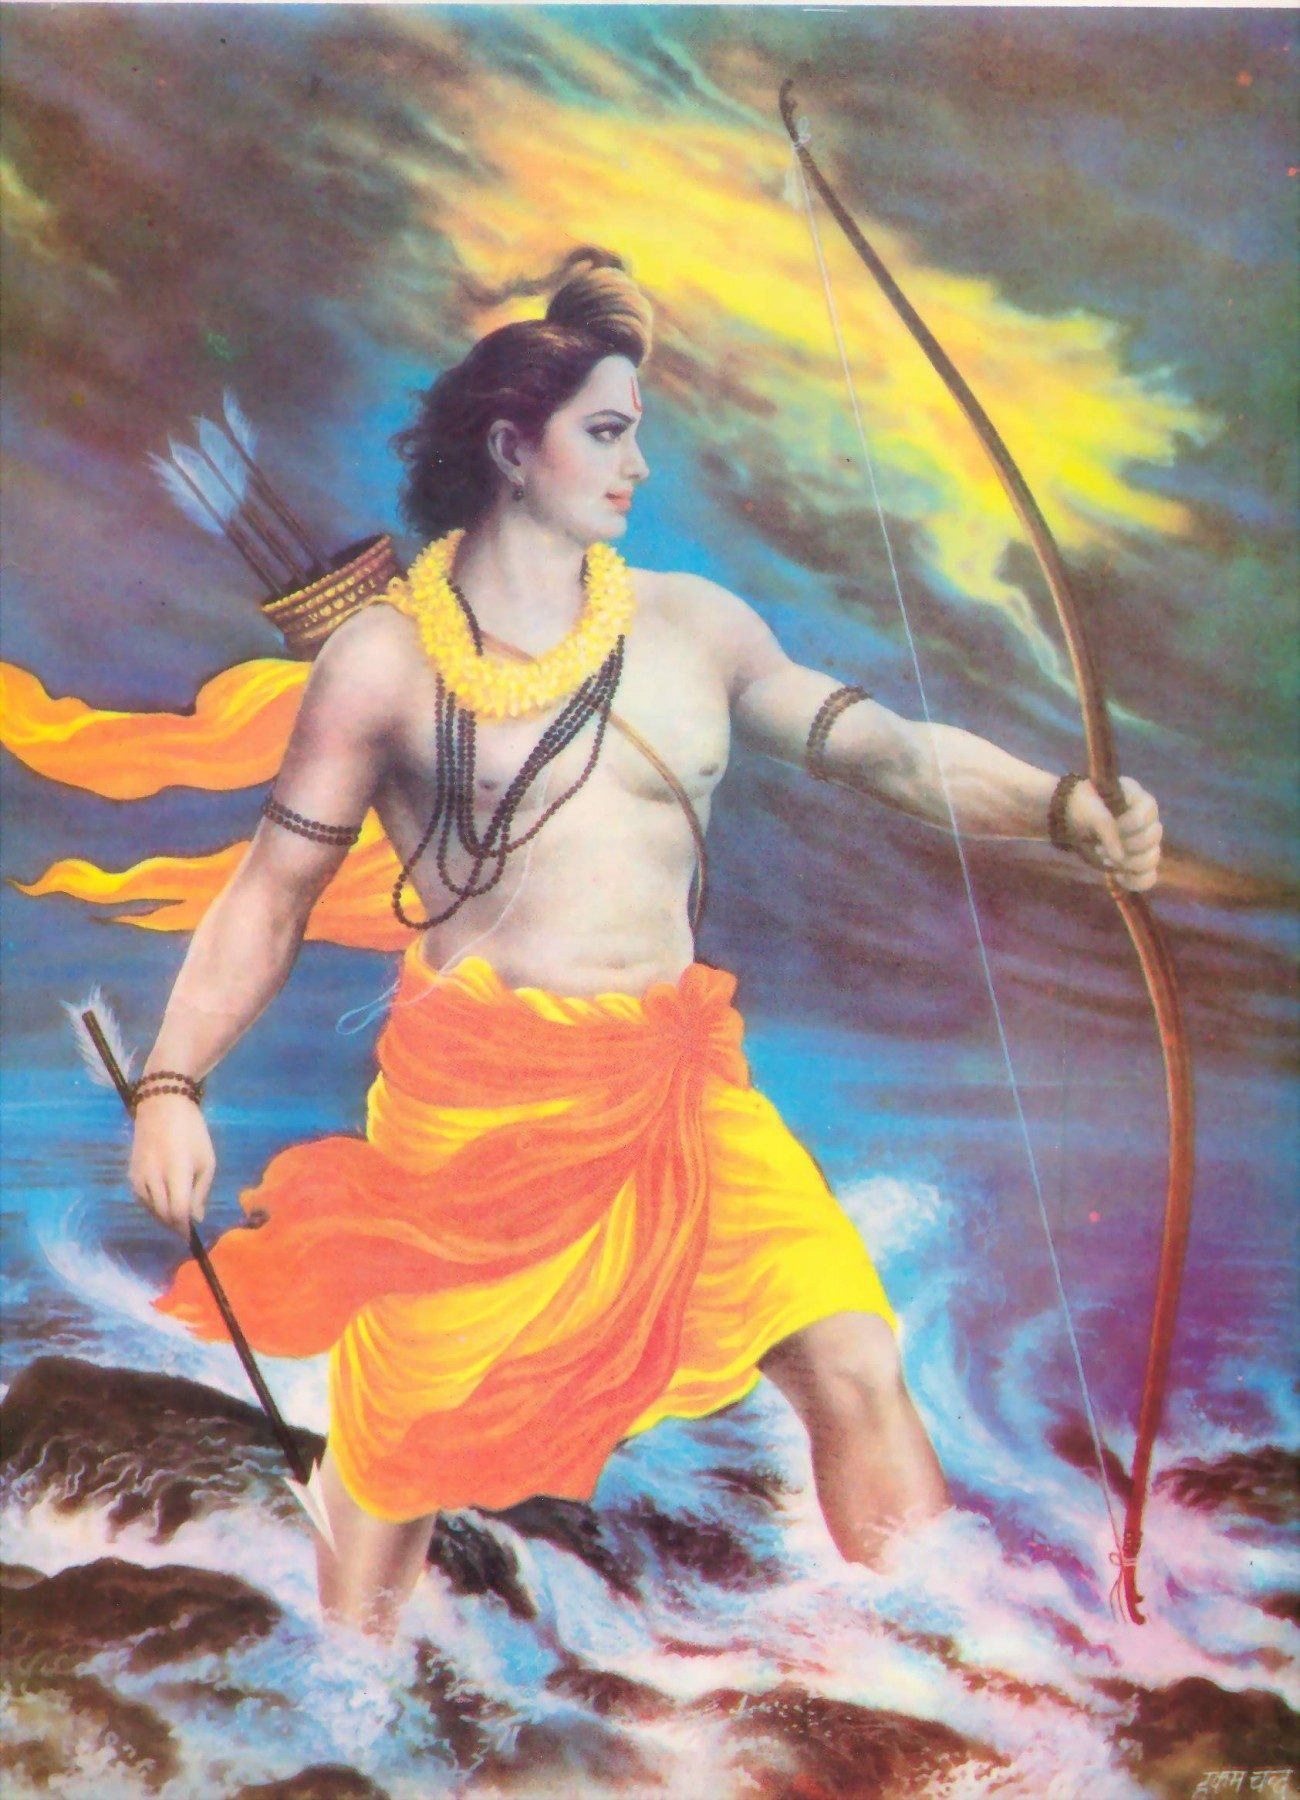 Jai Shri Ram 